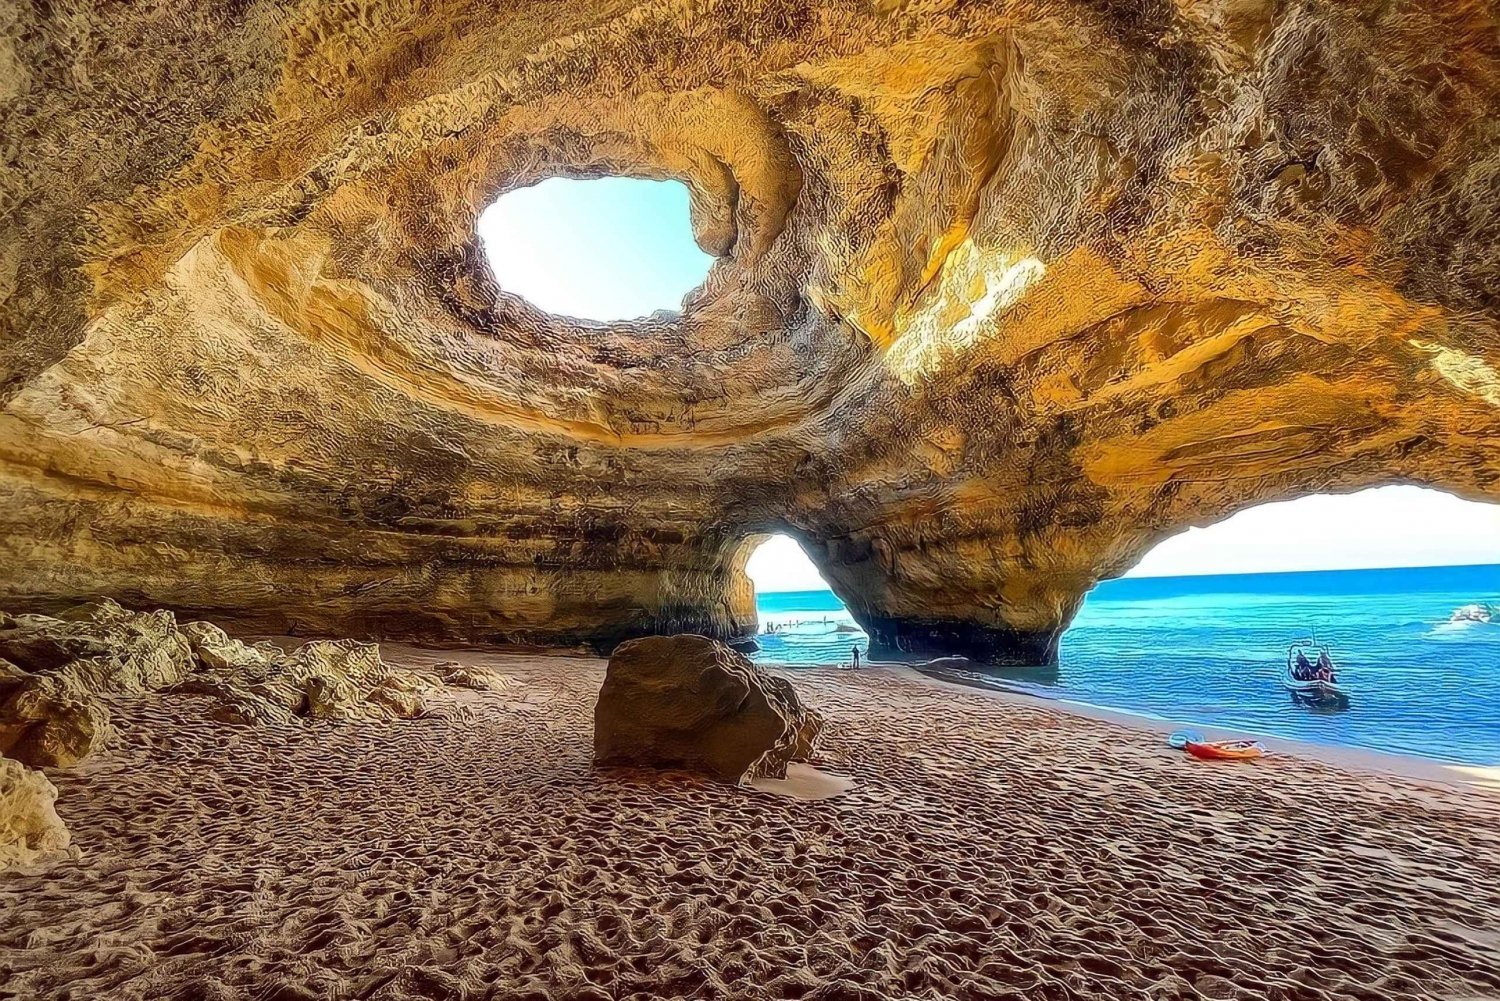 Benagil: Jaskinie, plaże i tajemnicze miejsca - wycieczka z przewodnikiem